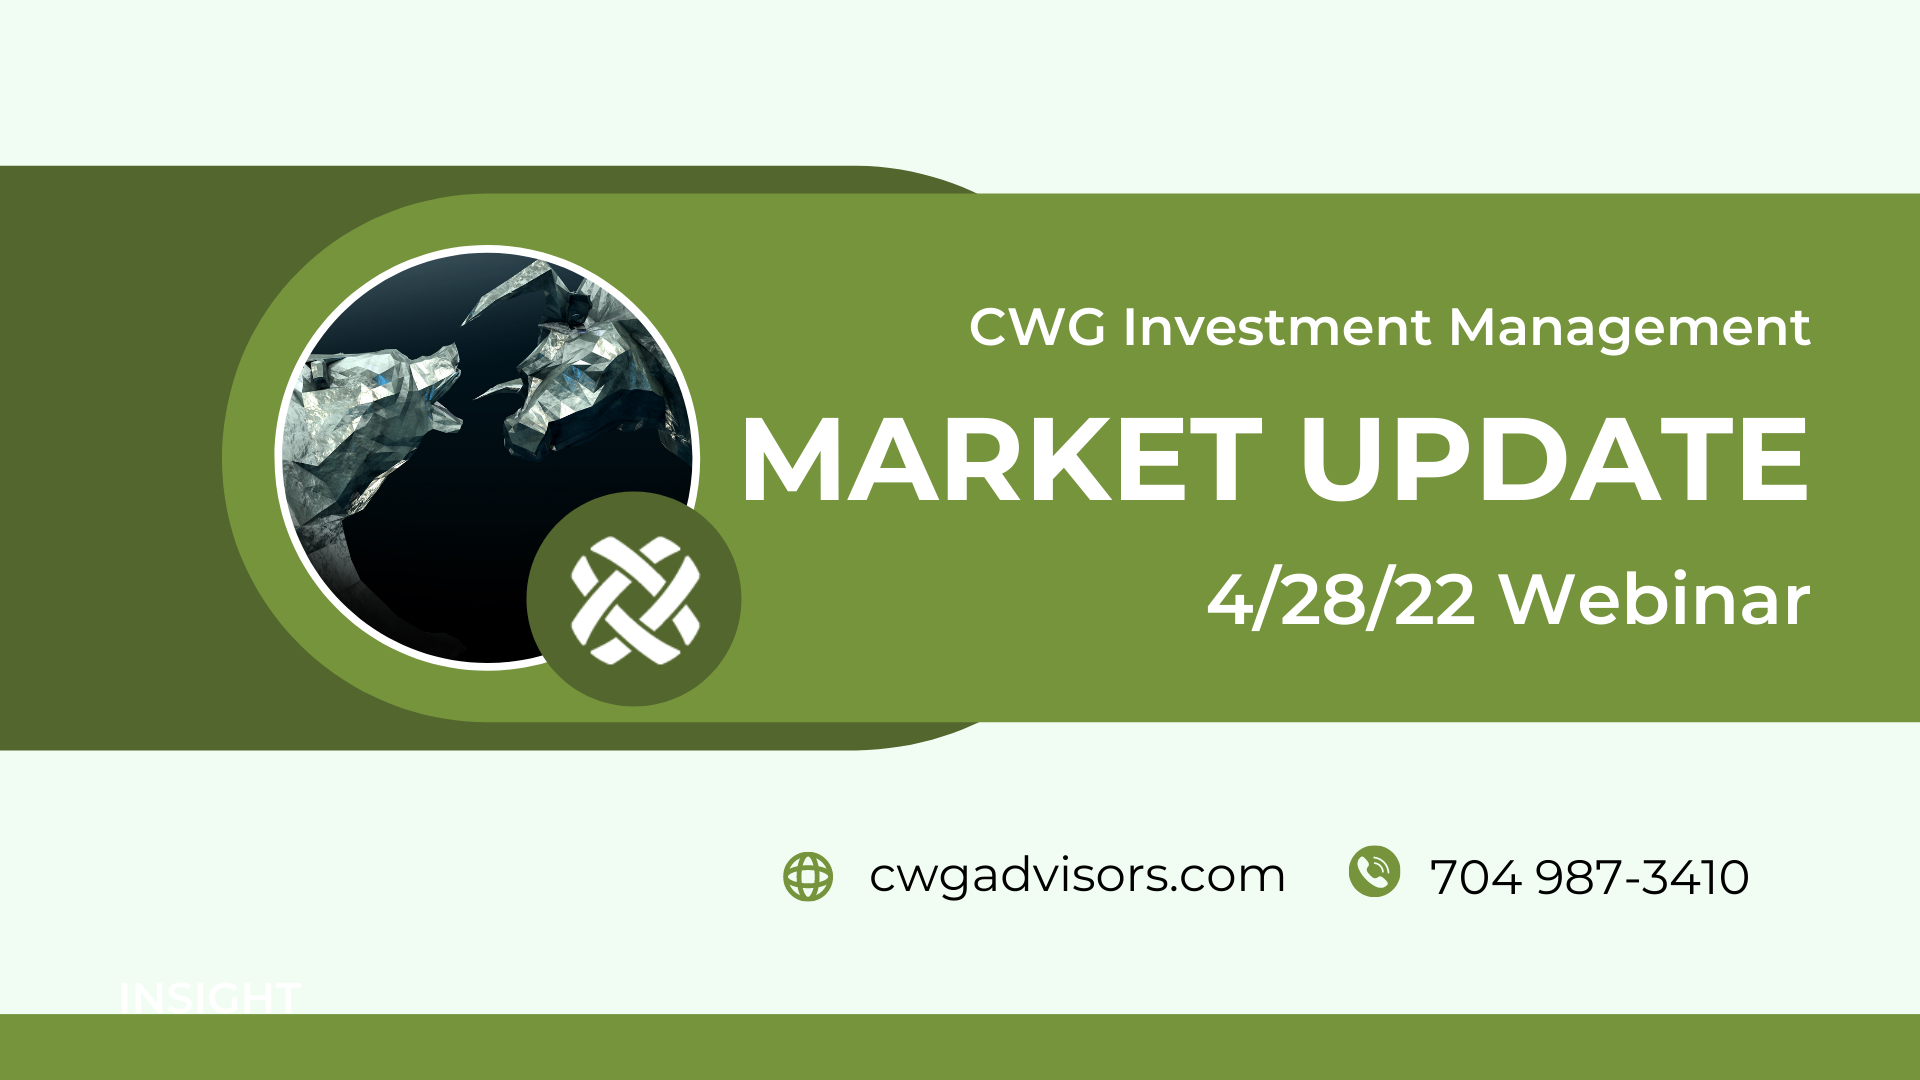 Market Update Webinar 4/28/22